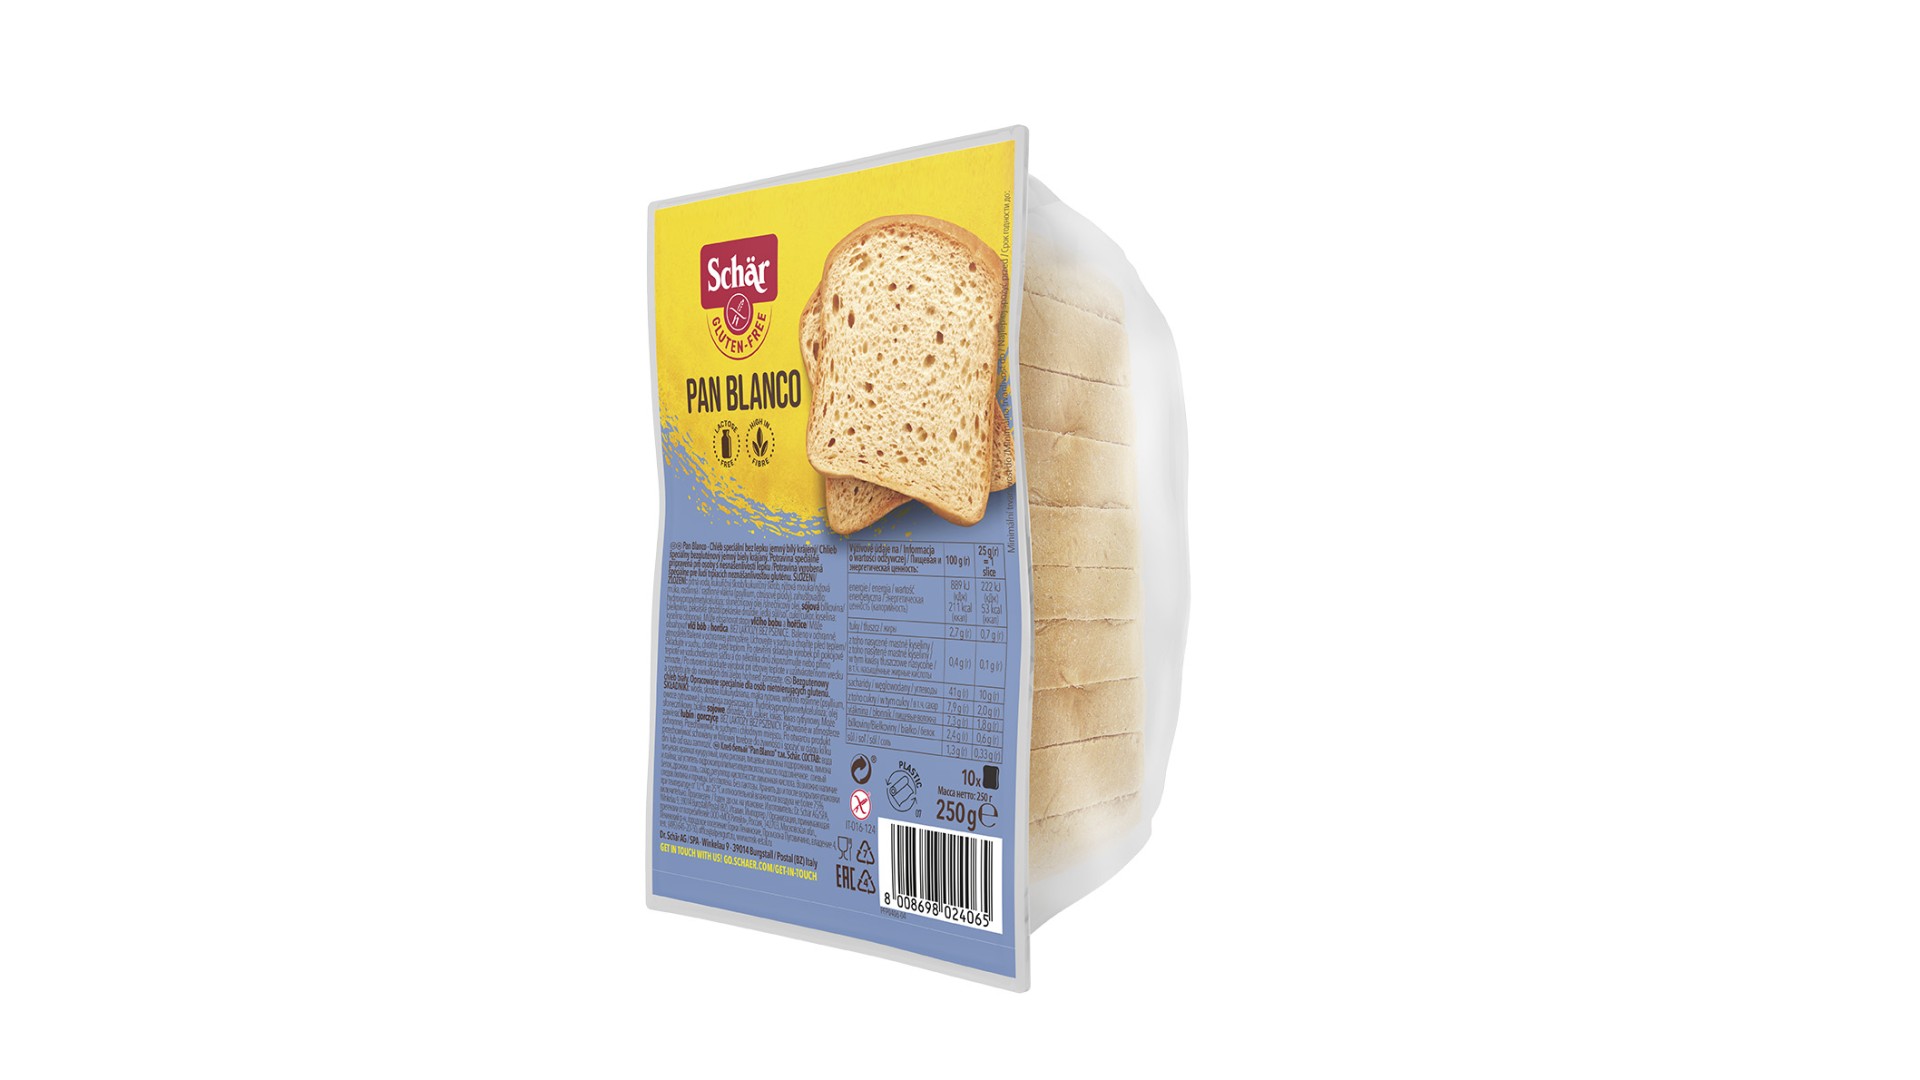 La barra de pan es pan blanco